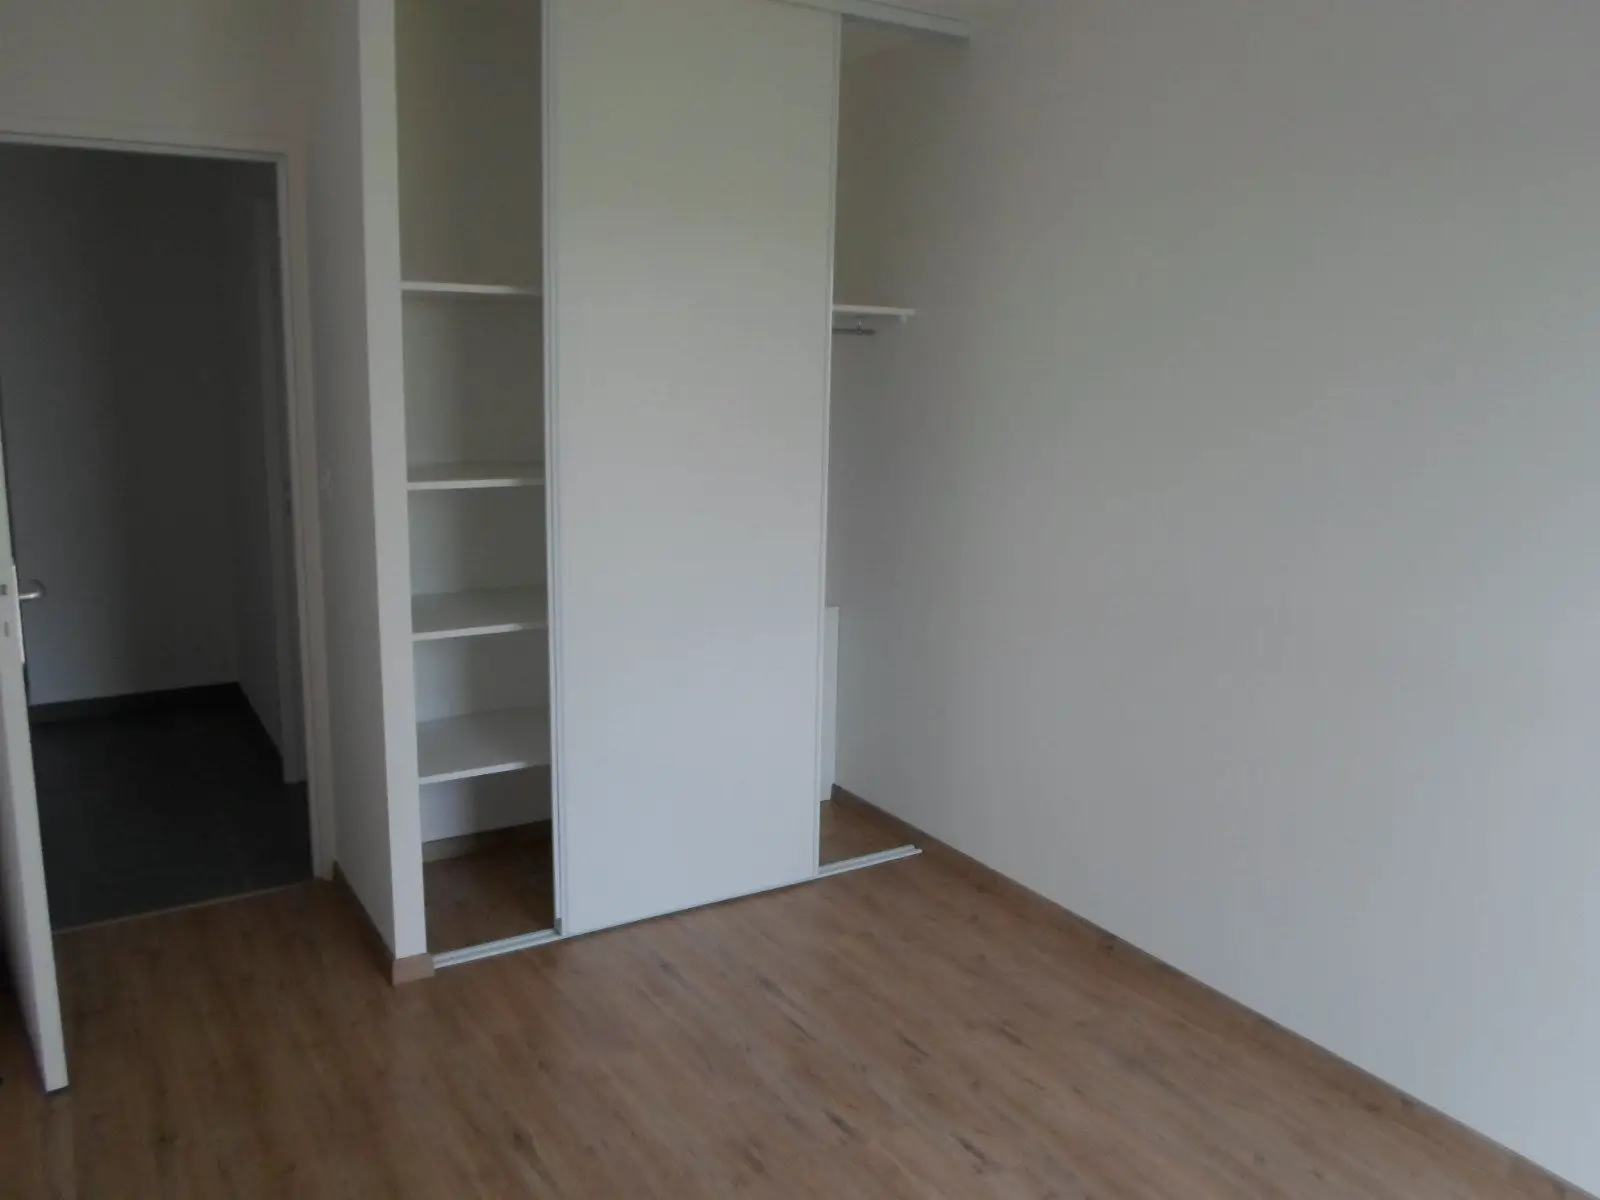 Location appartement 4 pièces 74,11 m2